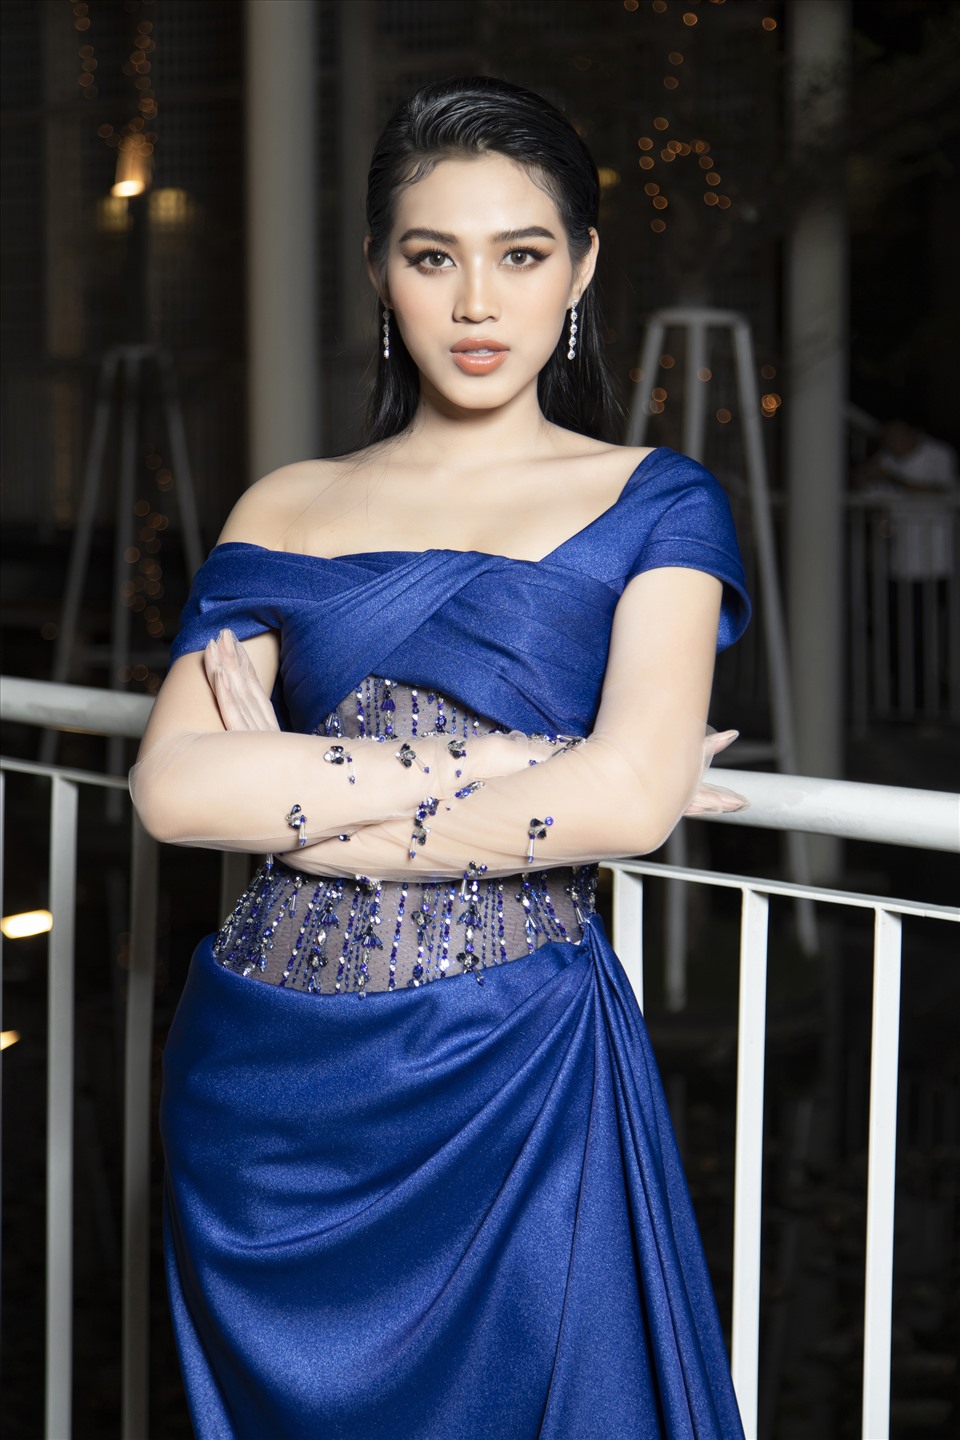 Chia sẻ với Lao Động, Hoa hậu Đỗ Thị Hà cho biết cô vẫn đang trong quá trình thử nghiệm các phong cách để tìm ra hình ảnh phù hợp nhất với bản thân trong 2 năm đương nhiệm. Ảnh: Sâu béo.